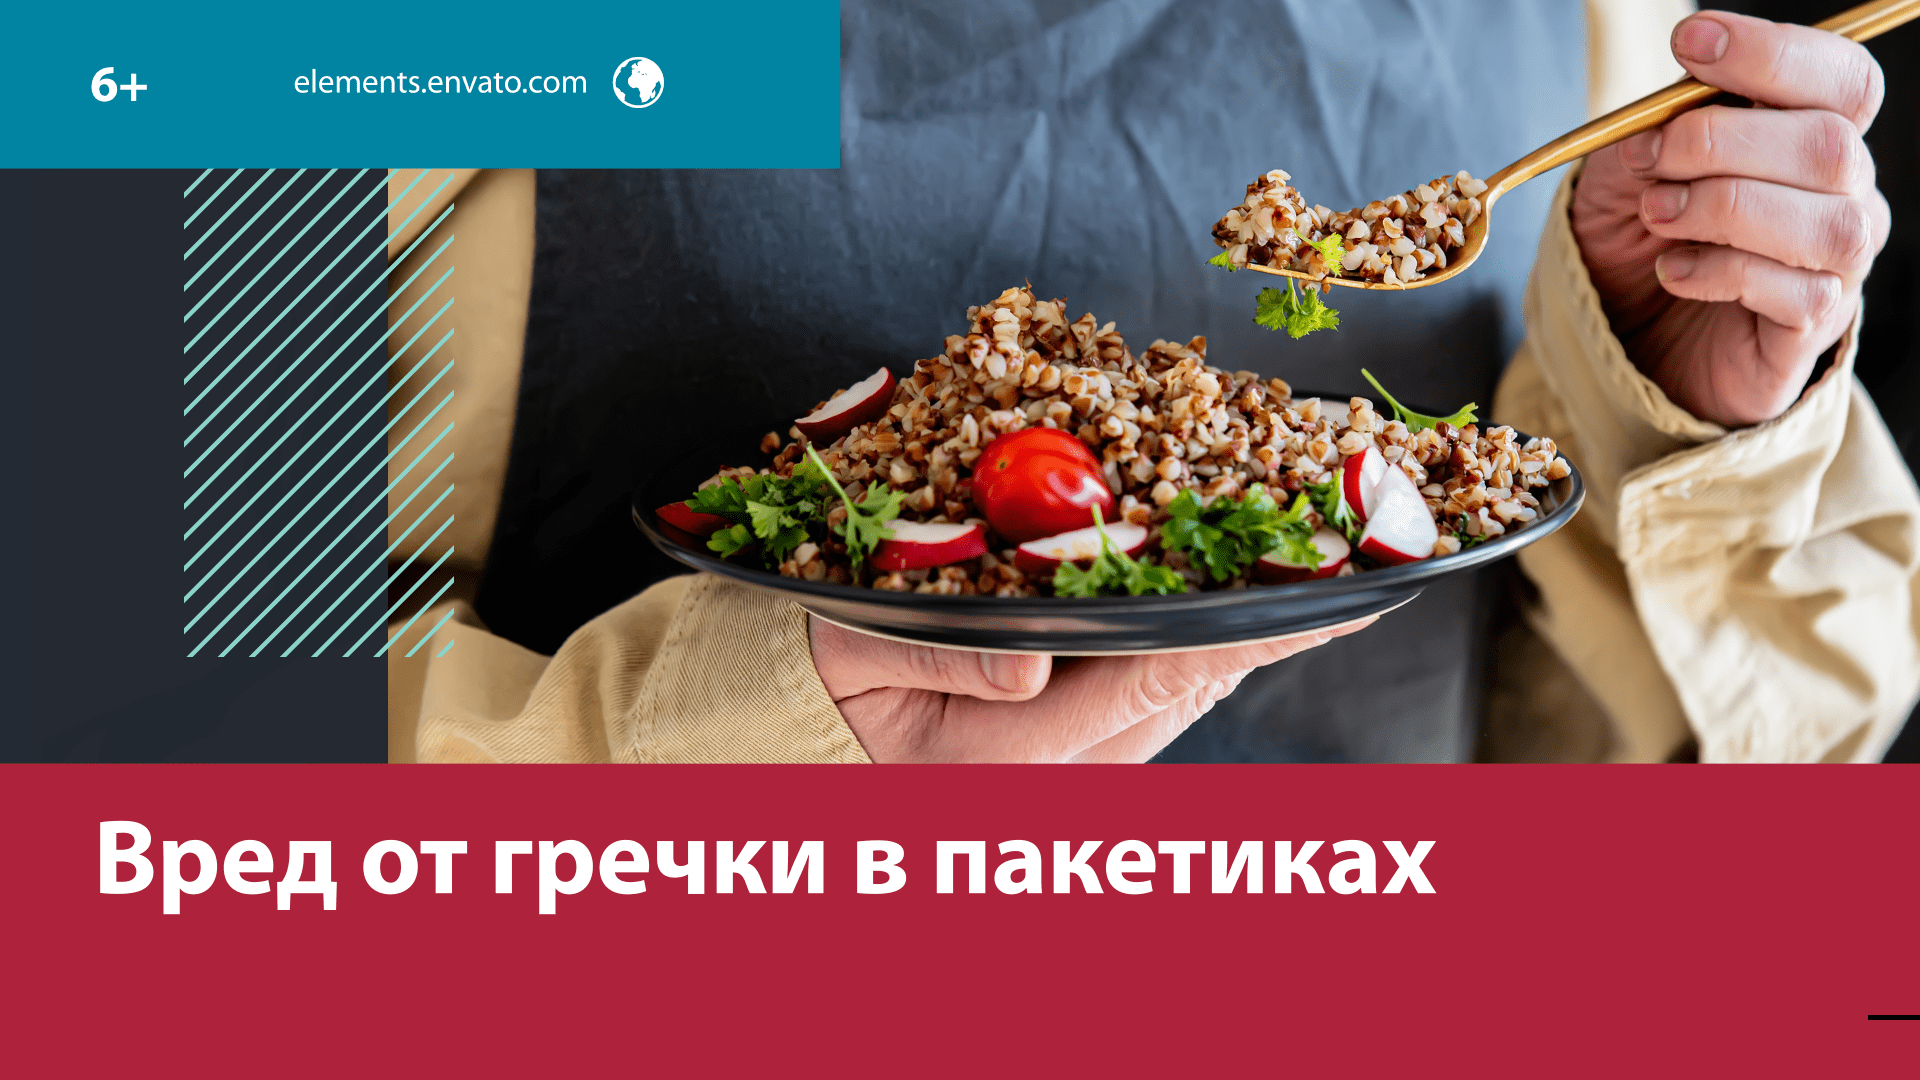 Стоит ли покупать гречку в пакетиках? — Москва FM